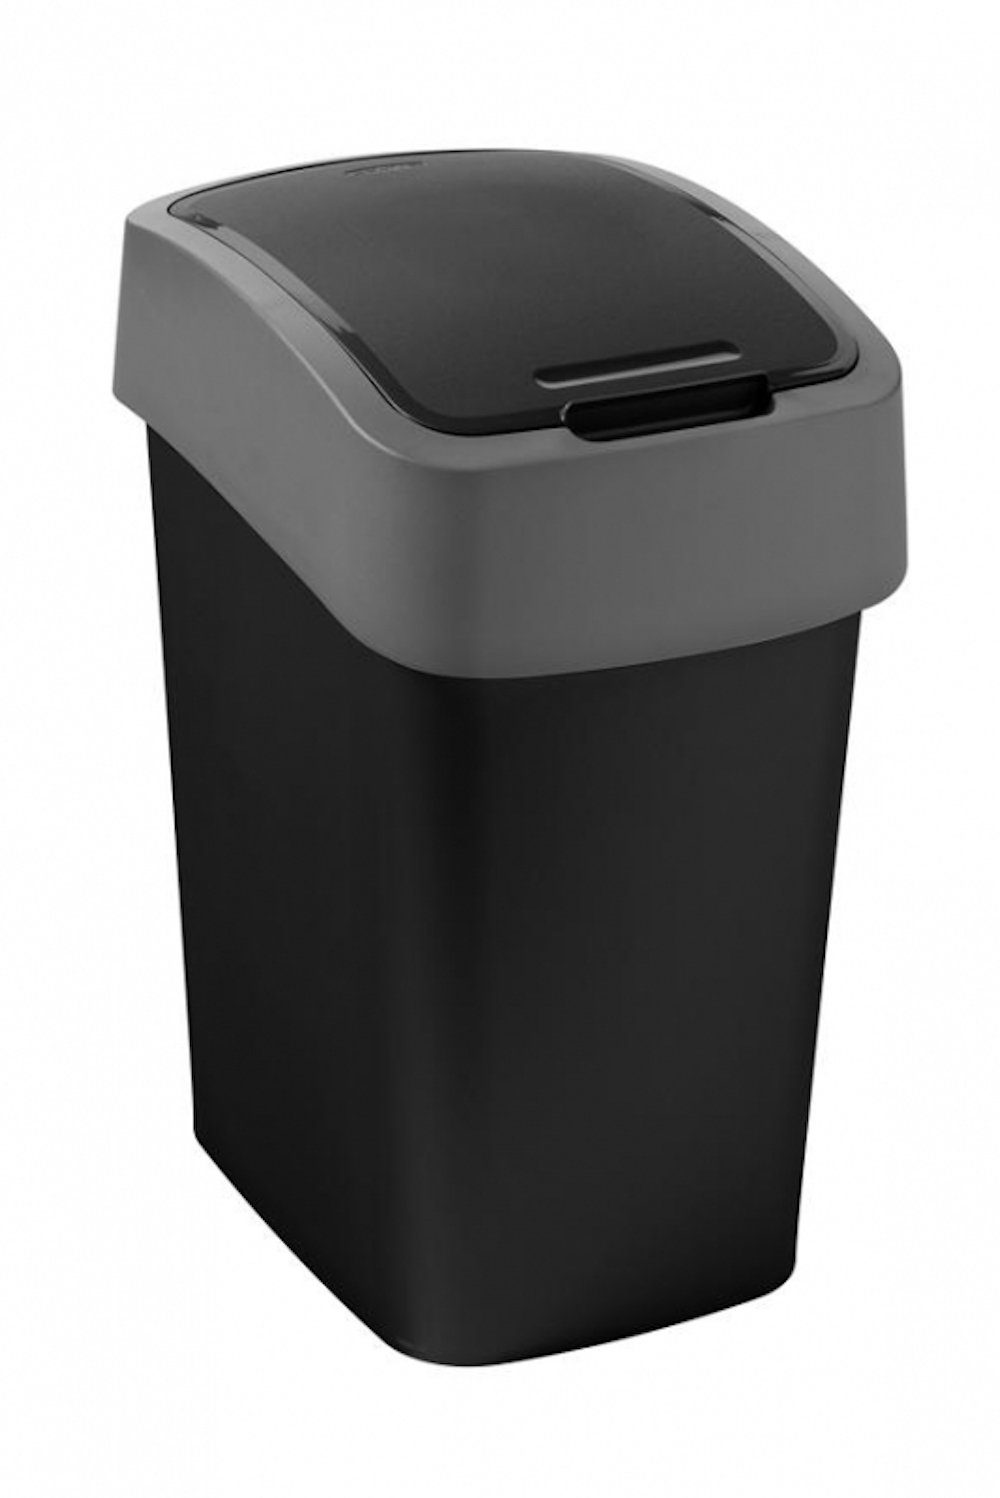 PROREGAL® Mülleimer Abfallbehälter mit Schwing-/Klappdeckel,  9 Liter Fassungsvermögen, Schwing- und Klappdeckel